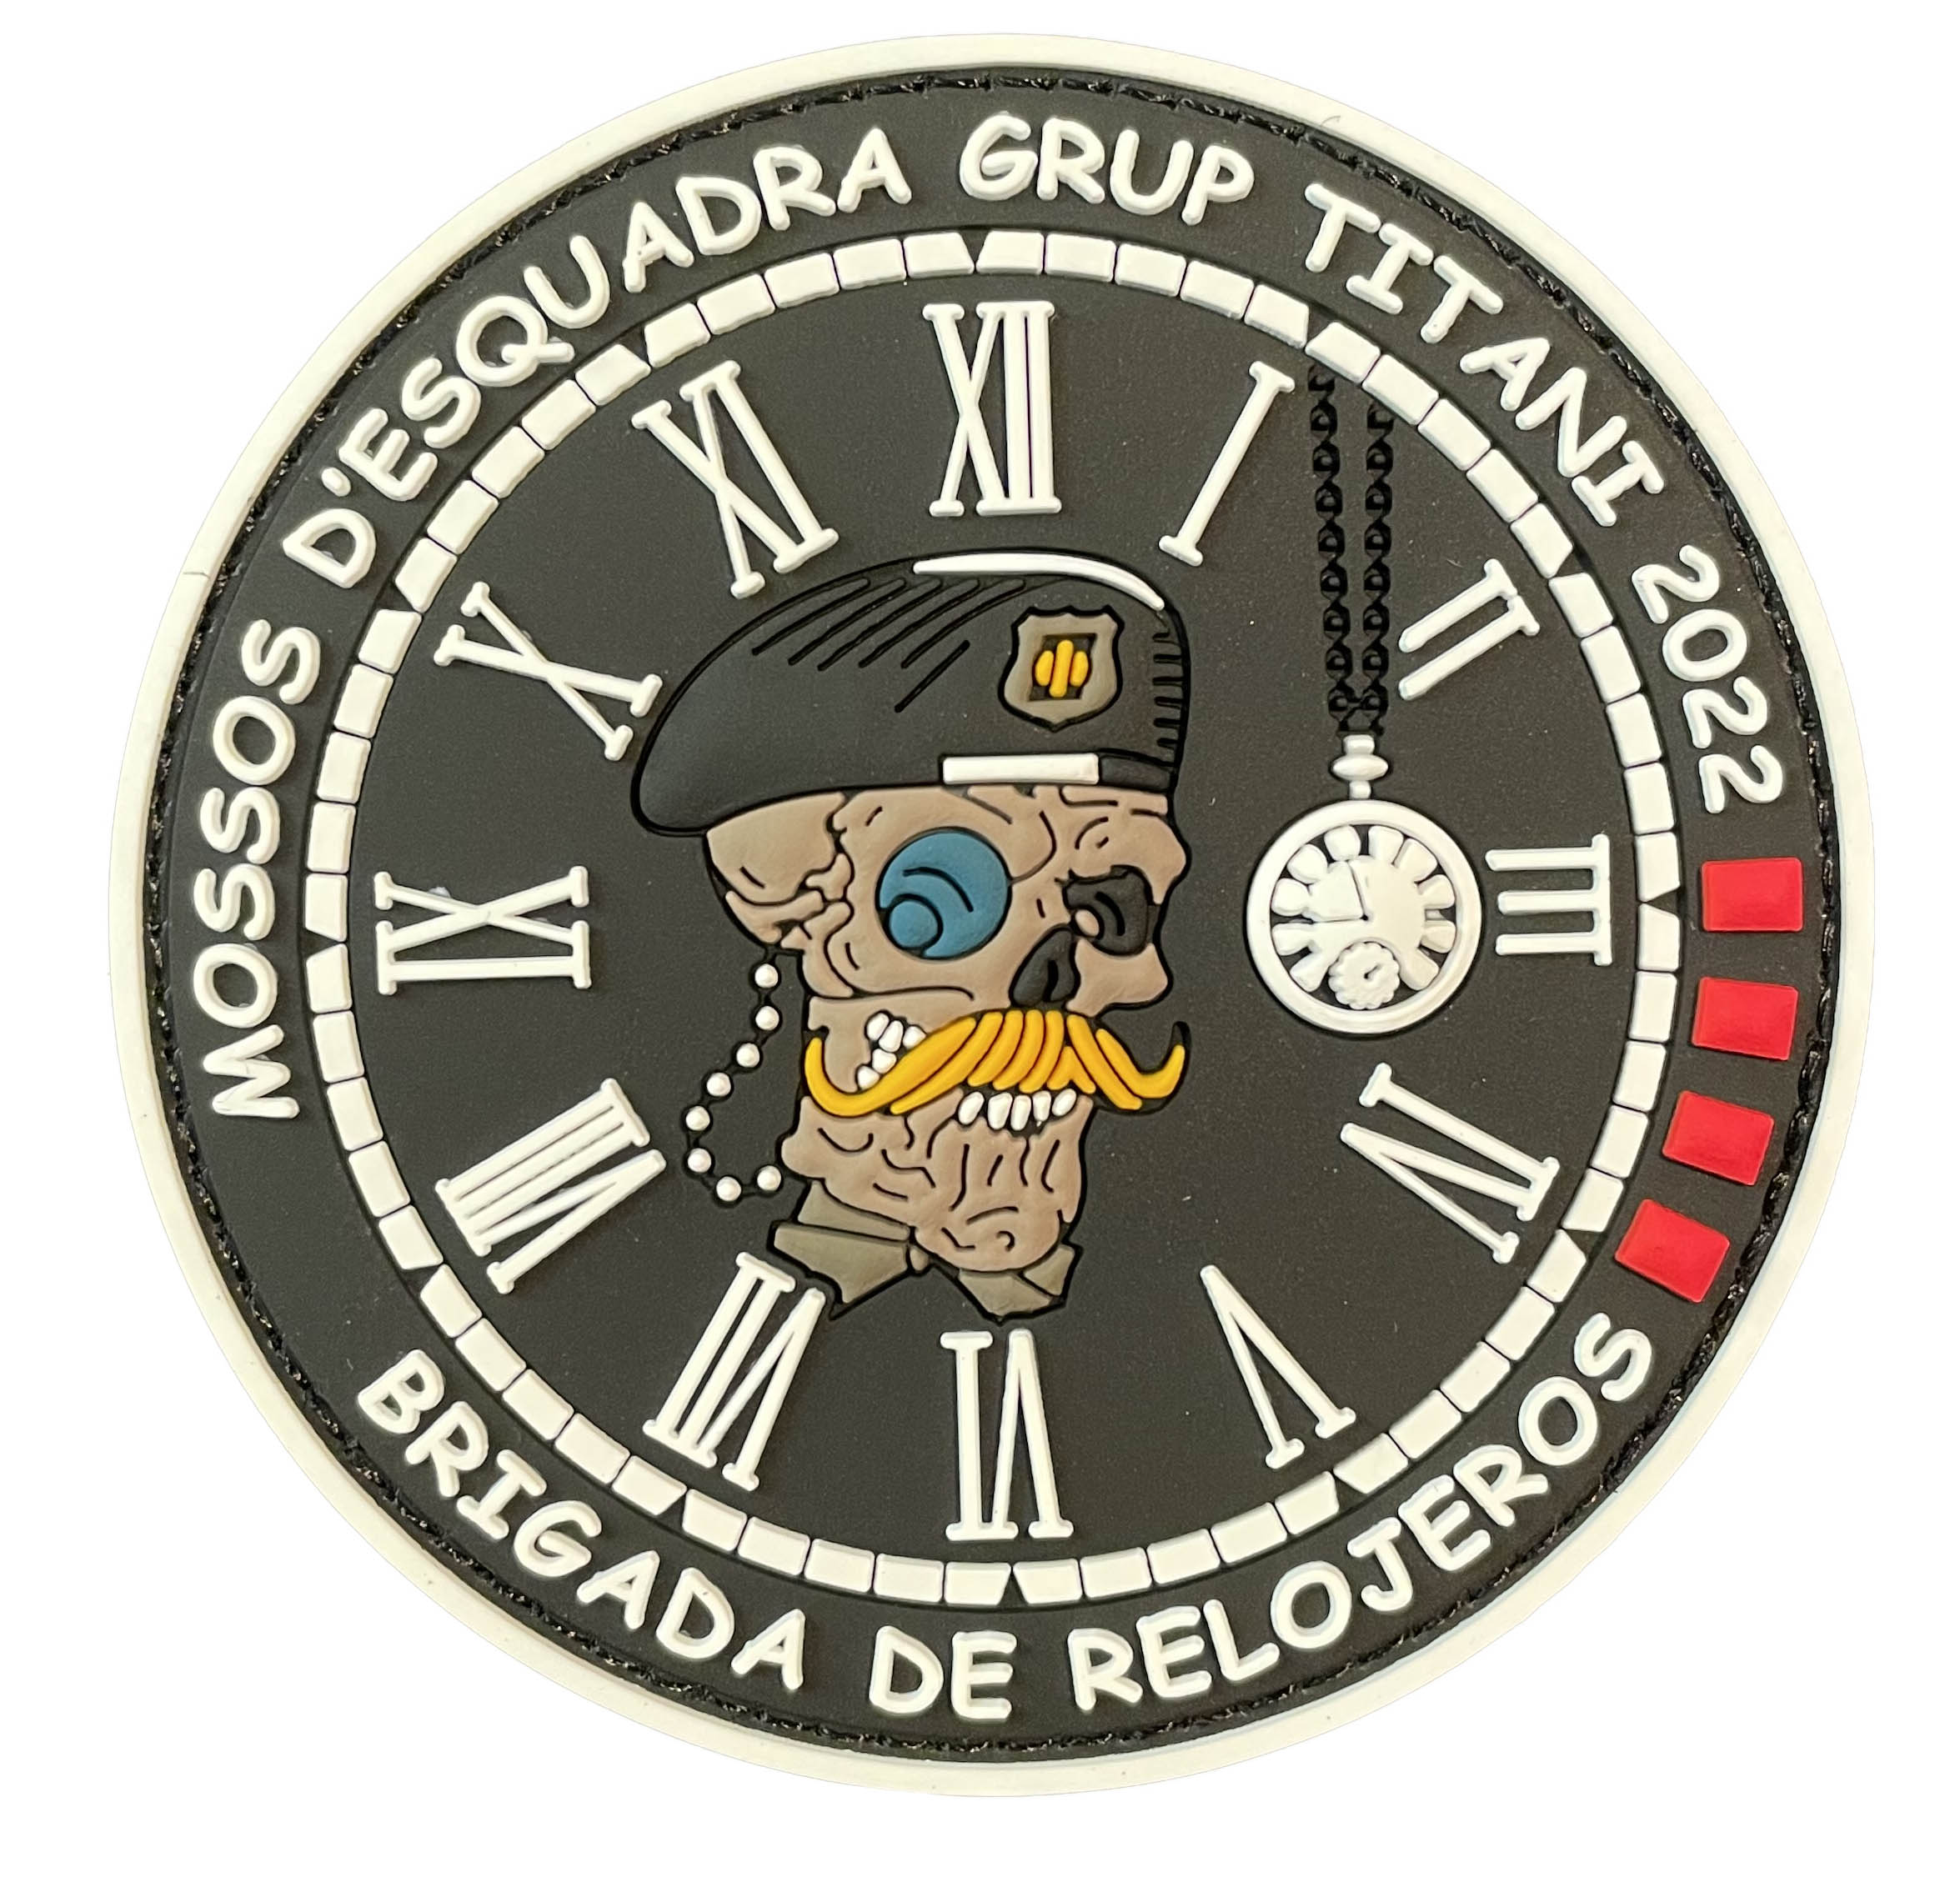 relojeros mossos